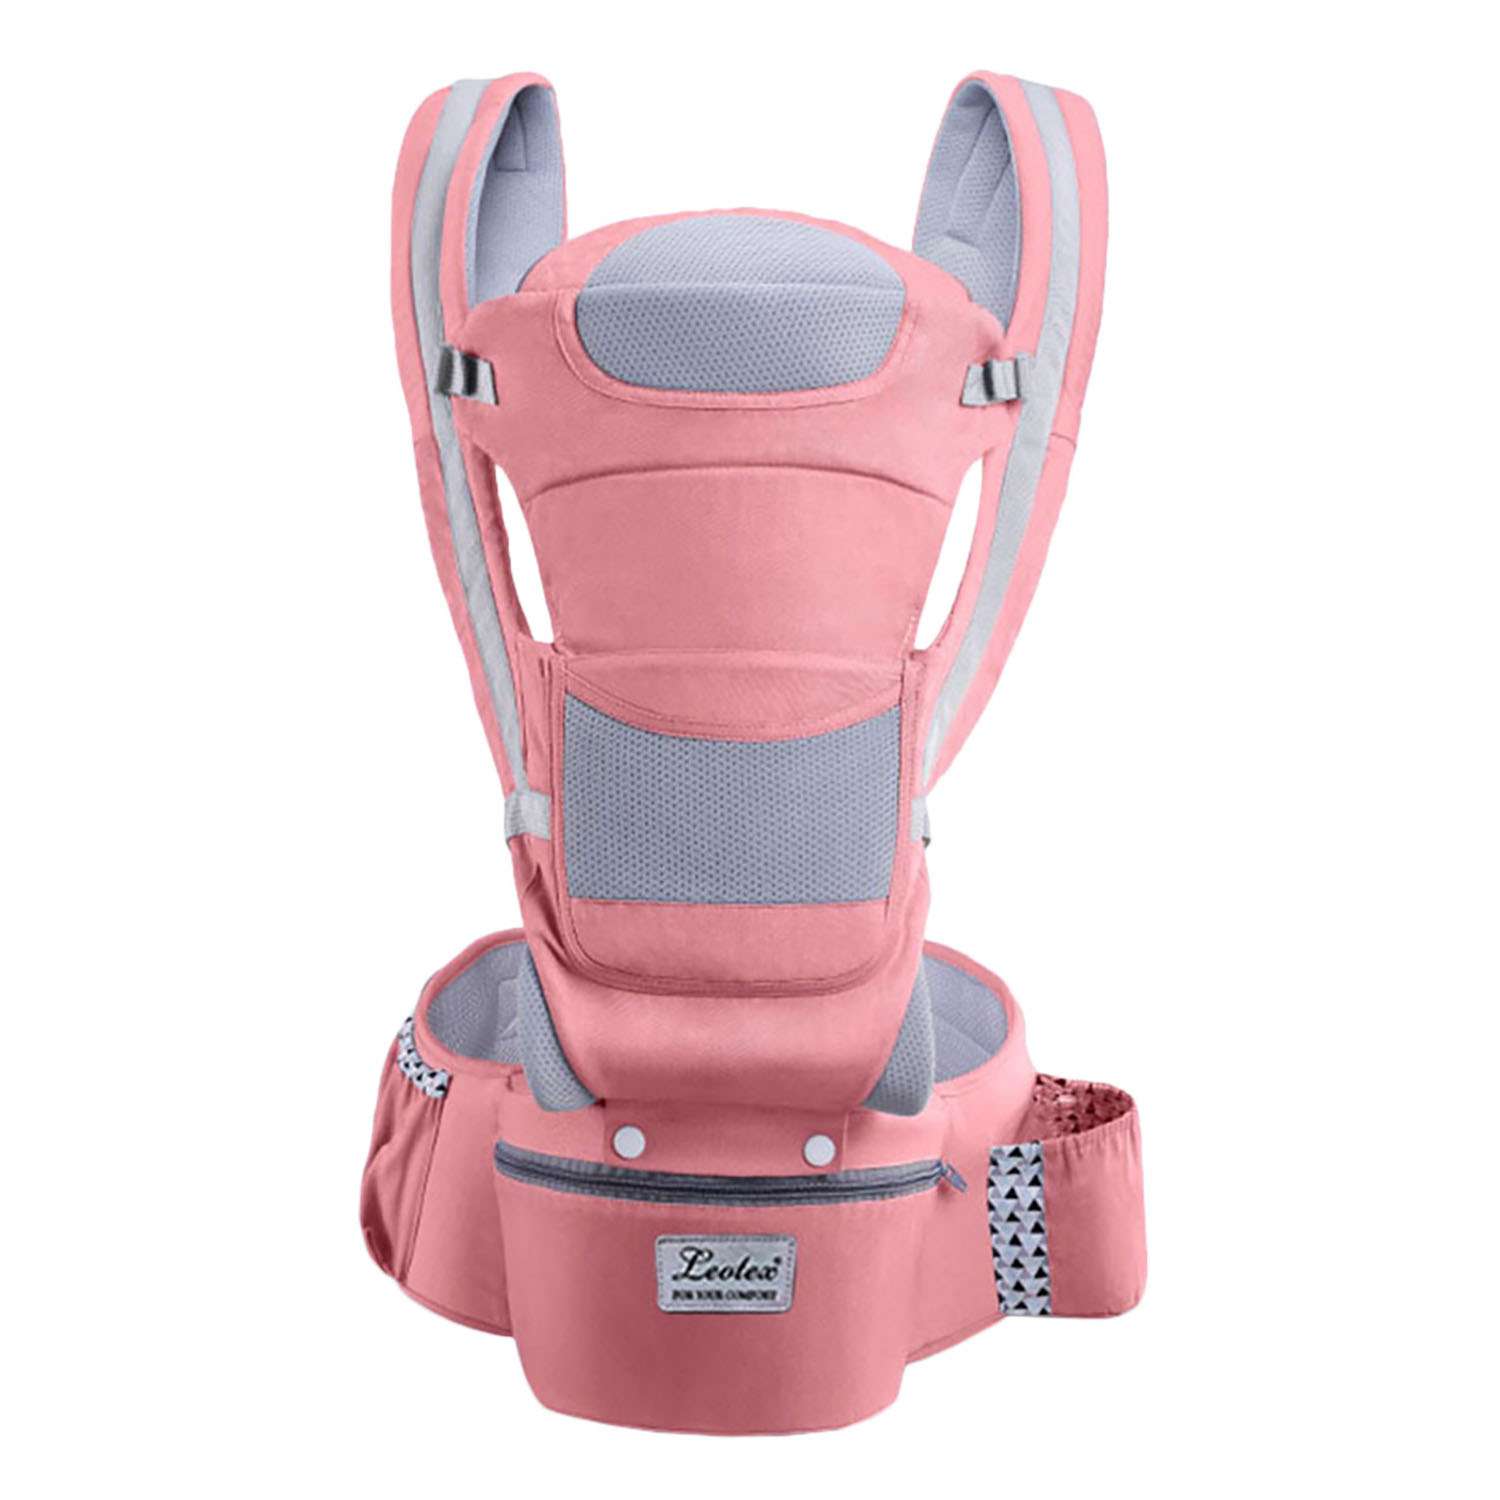 Рюкзак-переноска для детей Leotex розовый - фото 1